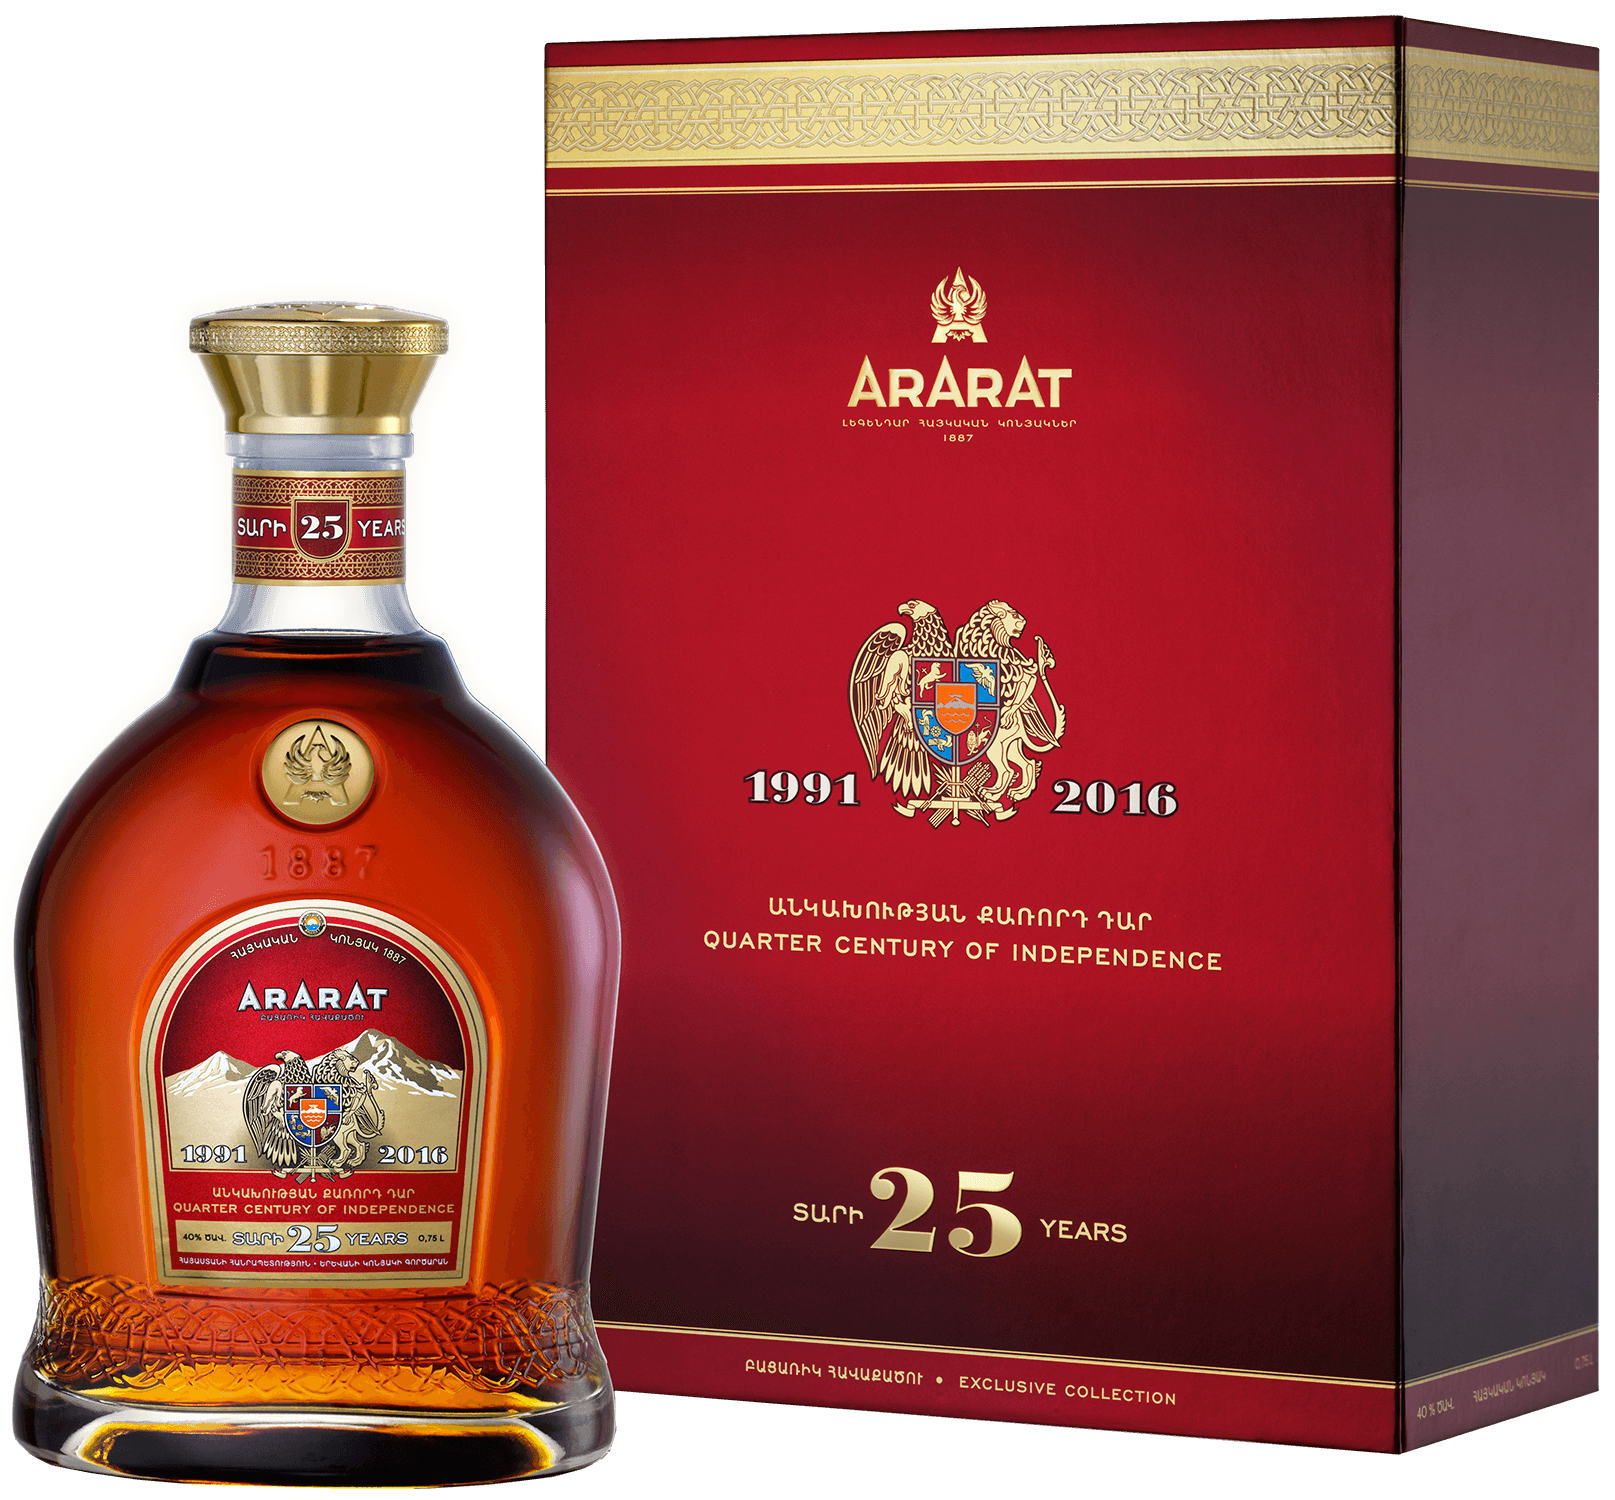 ararat otborny armenian brandy 7 y o gift box ARARAT Armenian Brandy 25 y.o. (gift box)